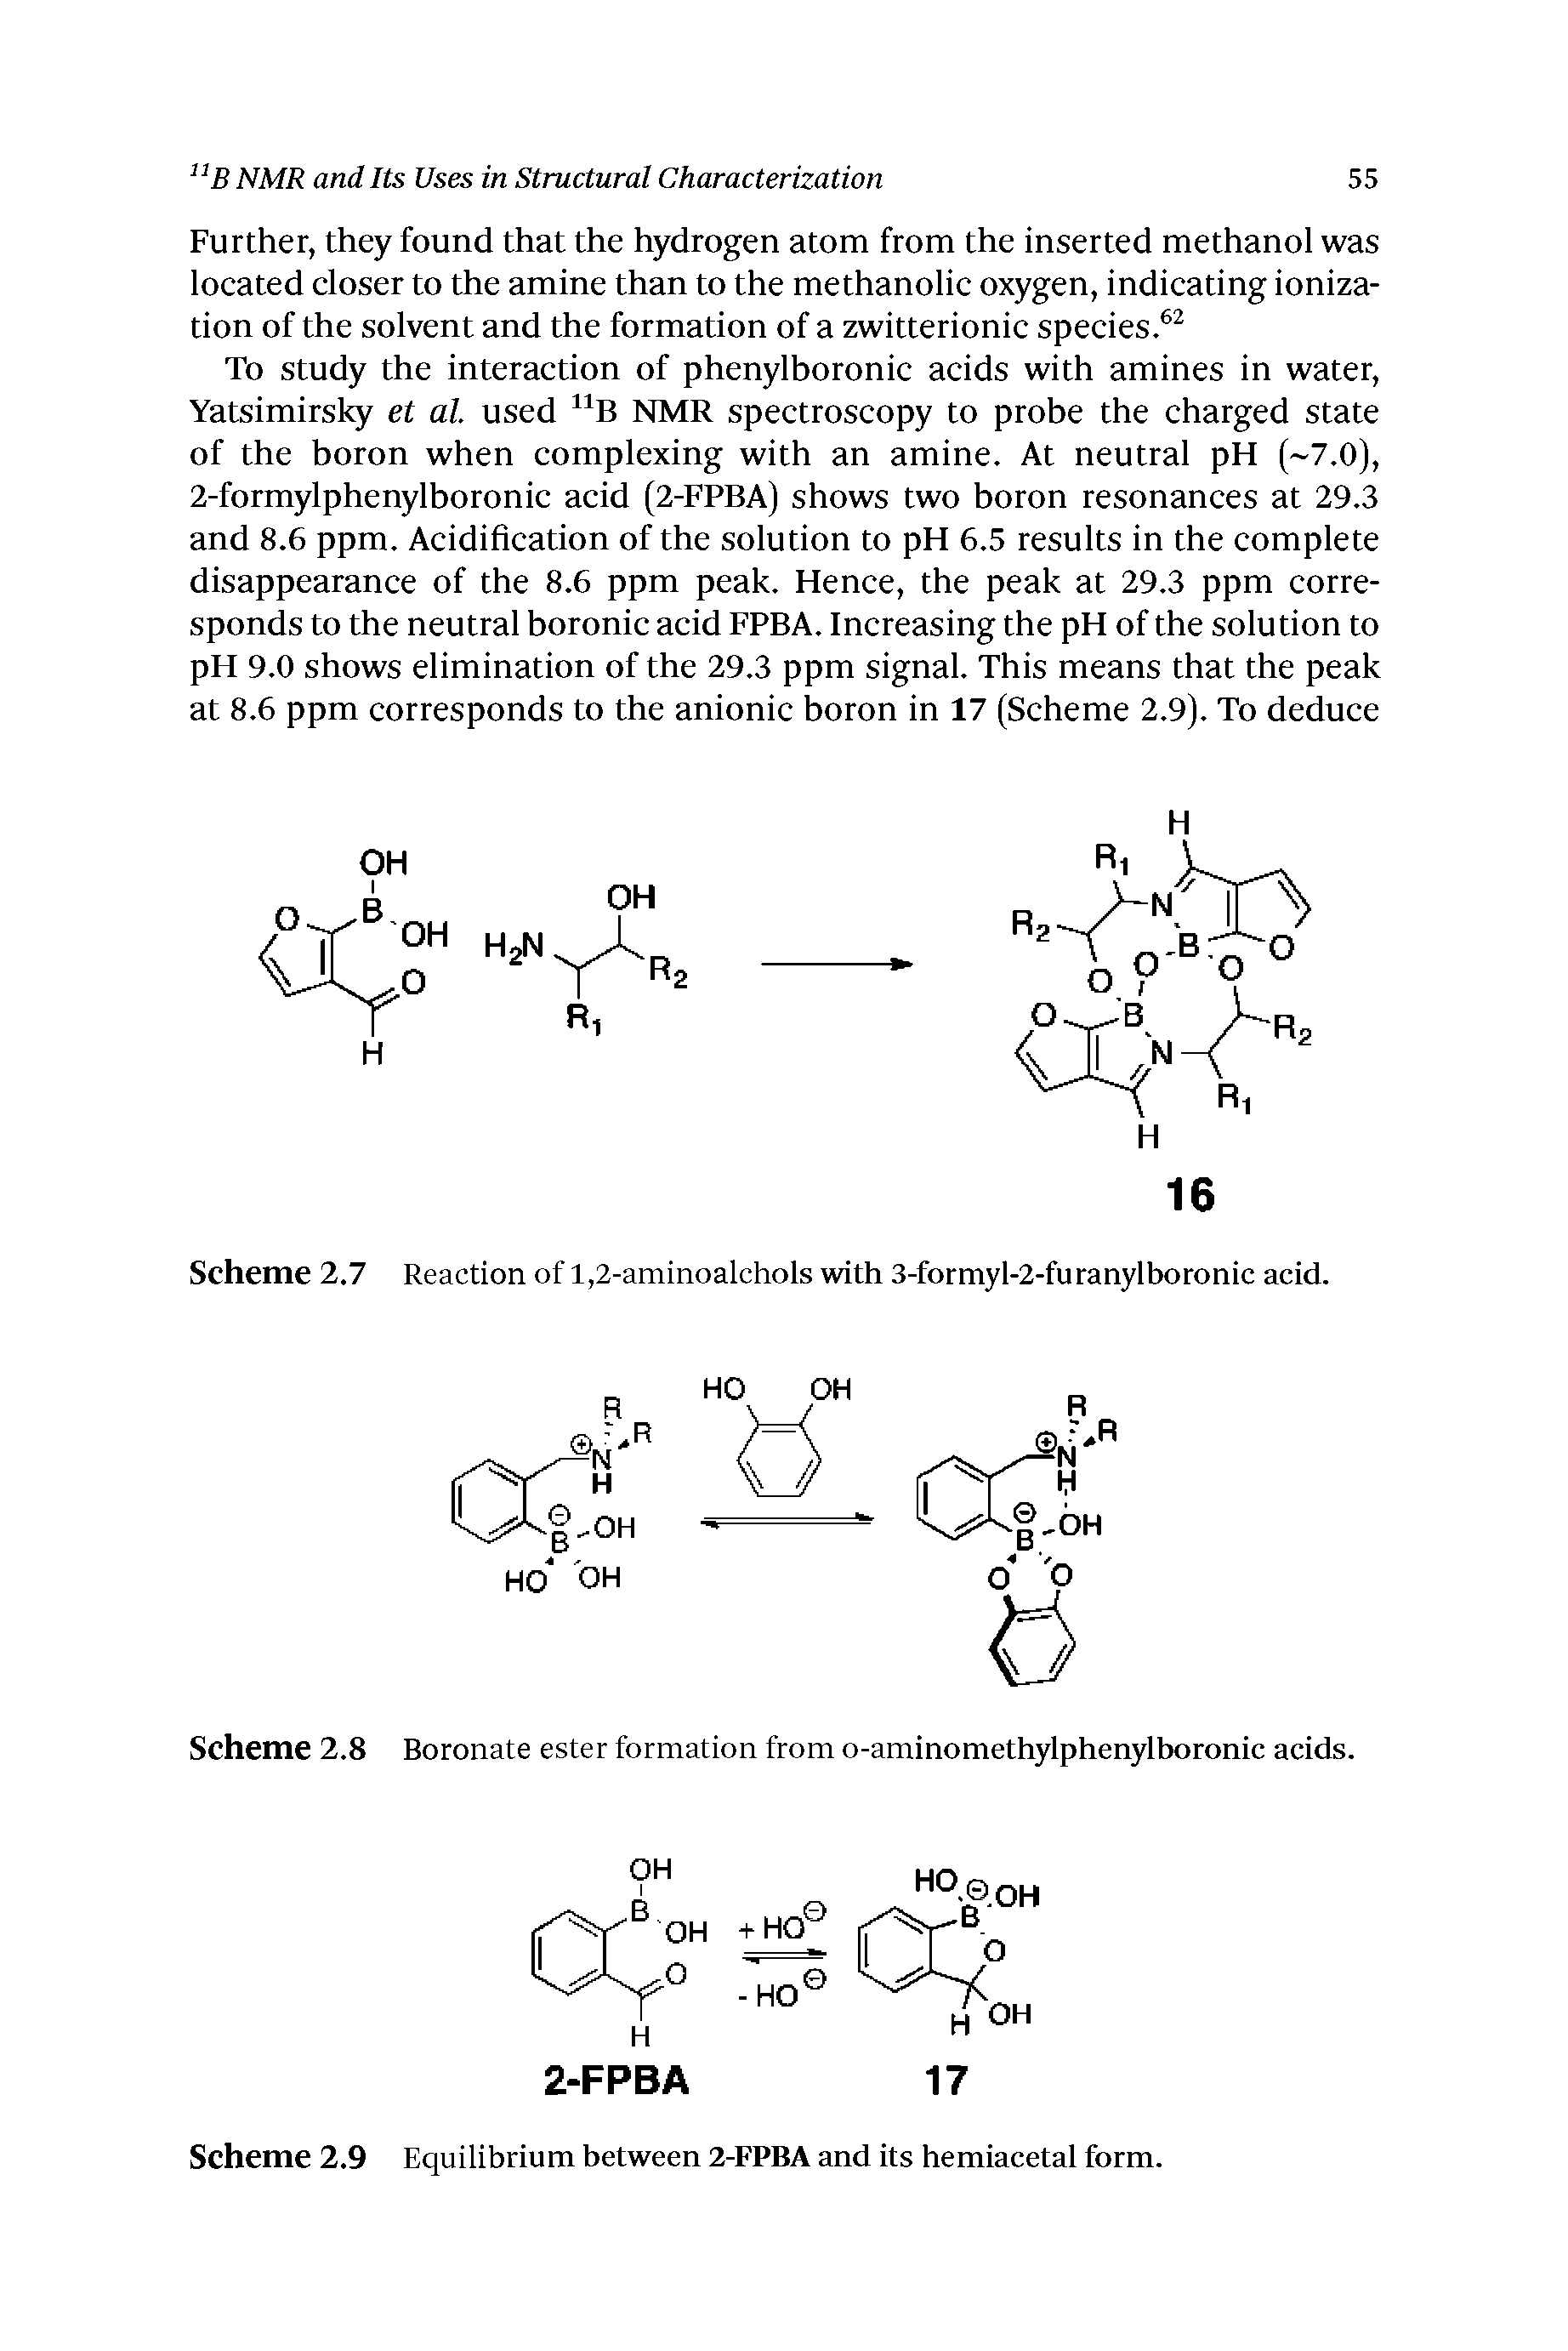 Scheme 2.8 Boronate ester formation from o-aminomethylphenylboronic acids.